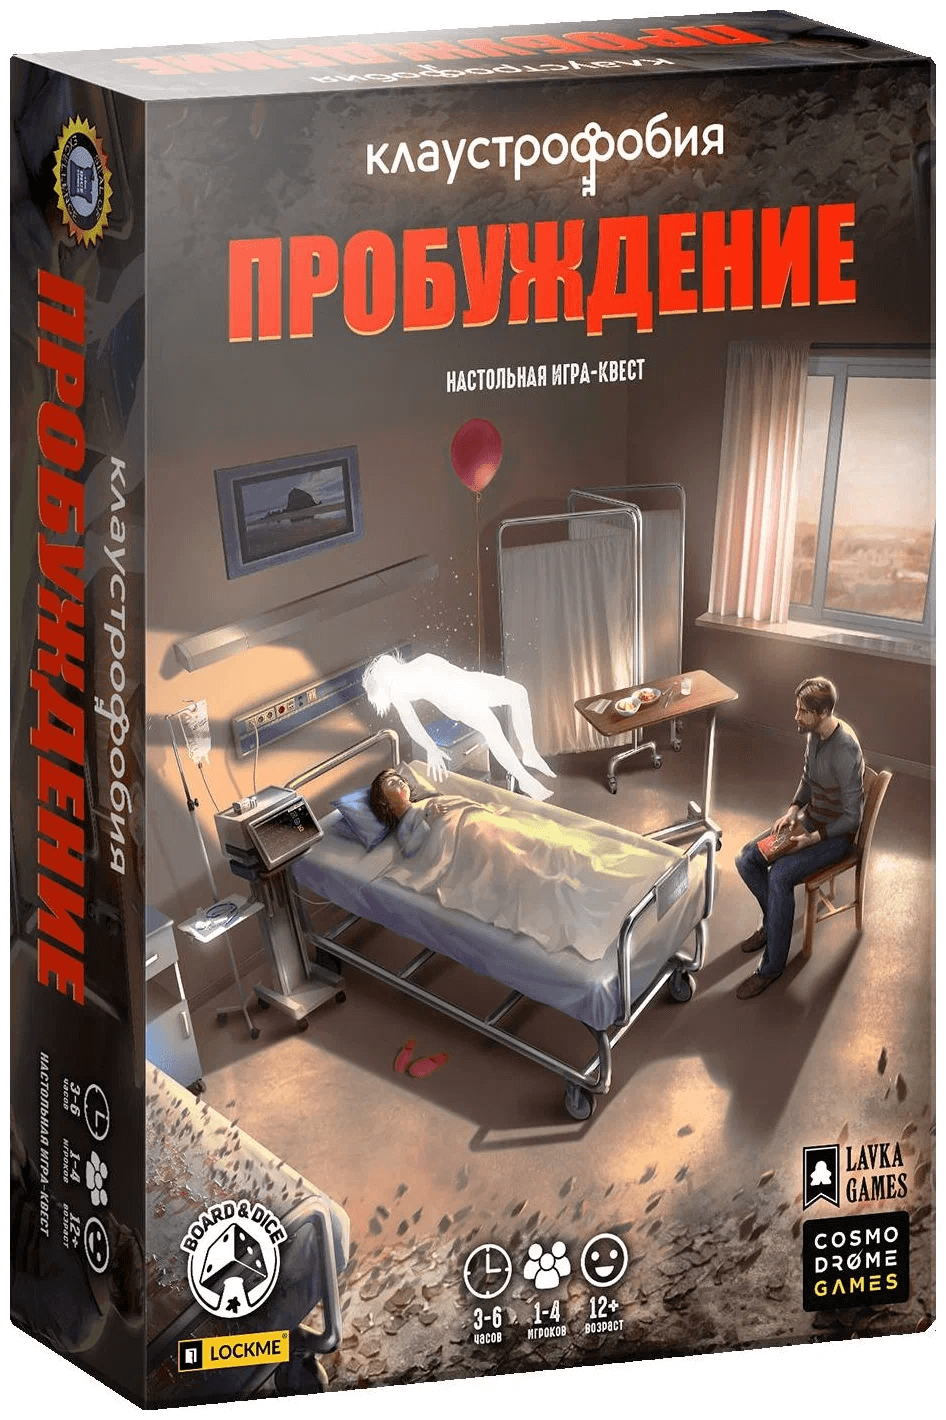 Cosmodrome Games Клаустрофобия "Пробуждение" 52069